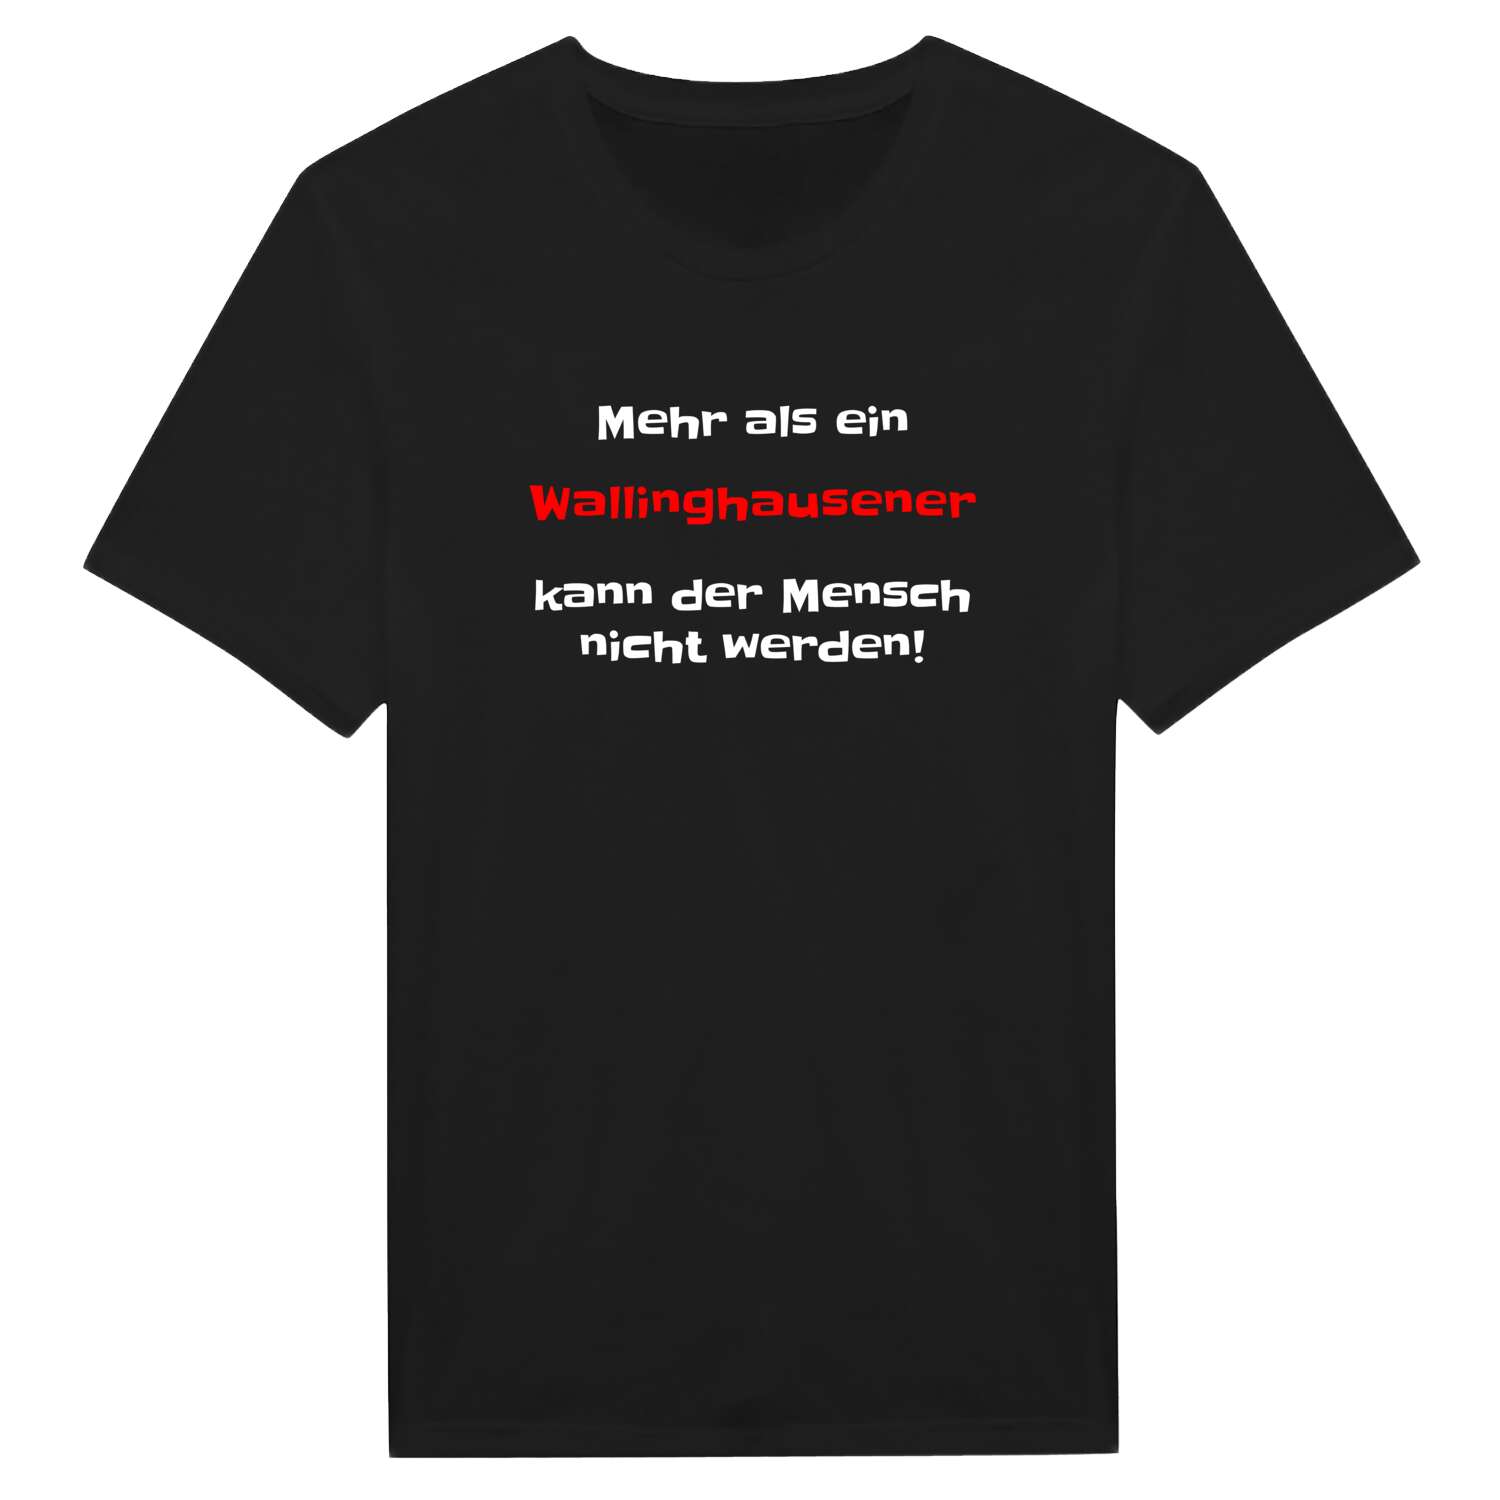 Wallinghausen T-Shirt »Mehr als ein«